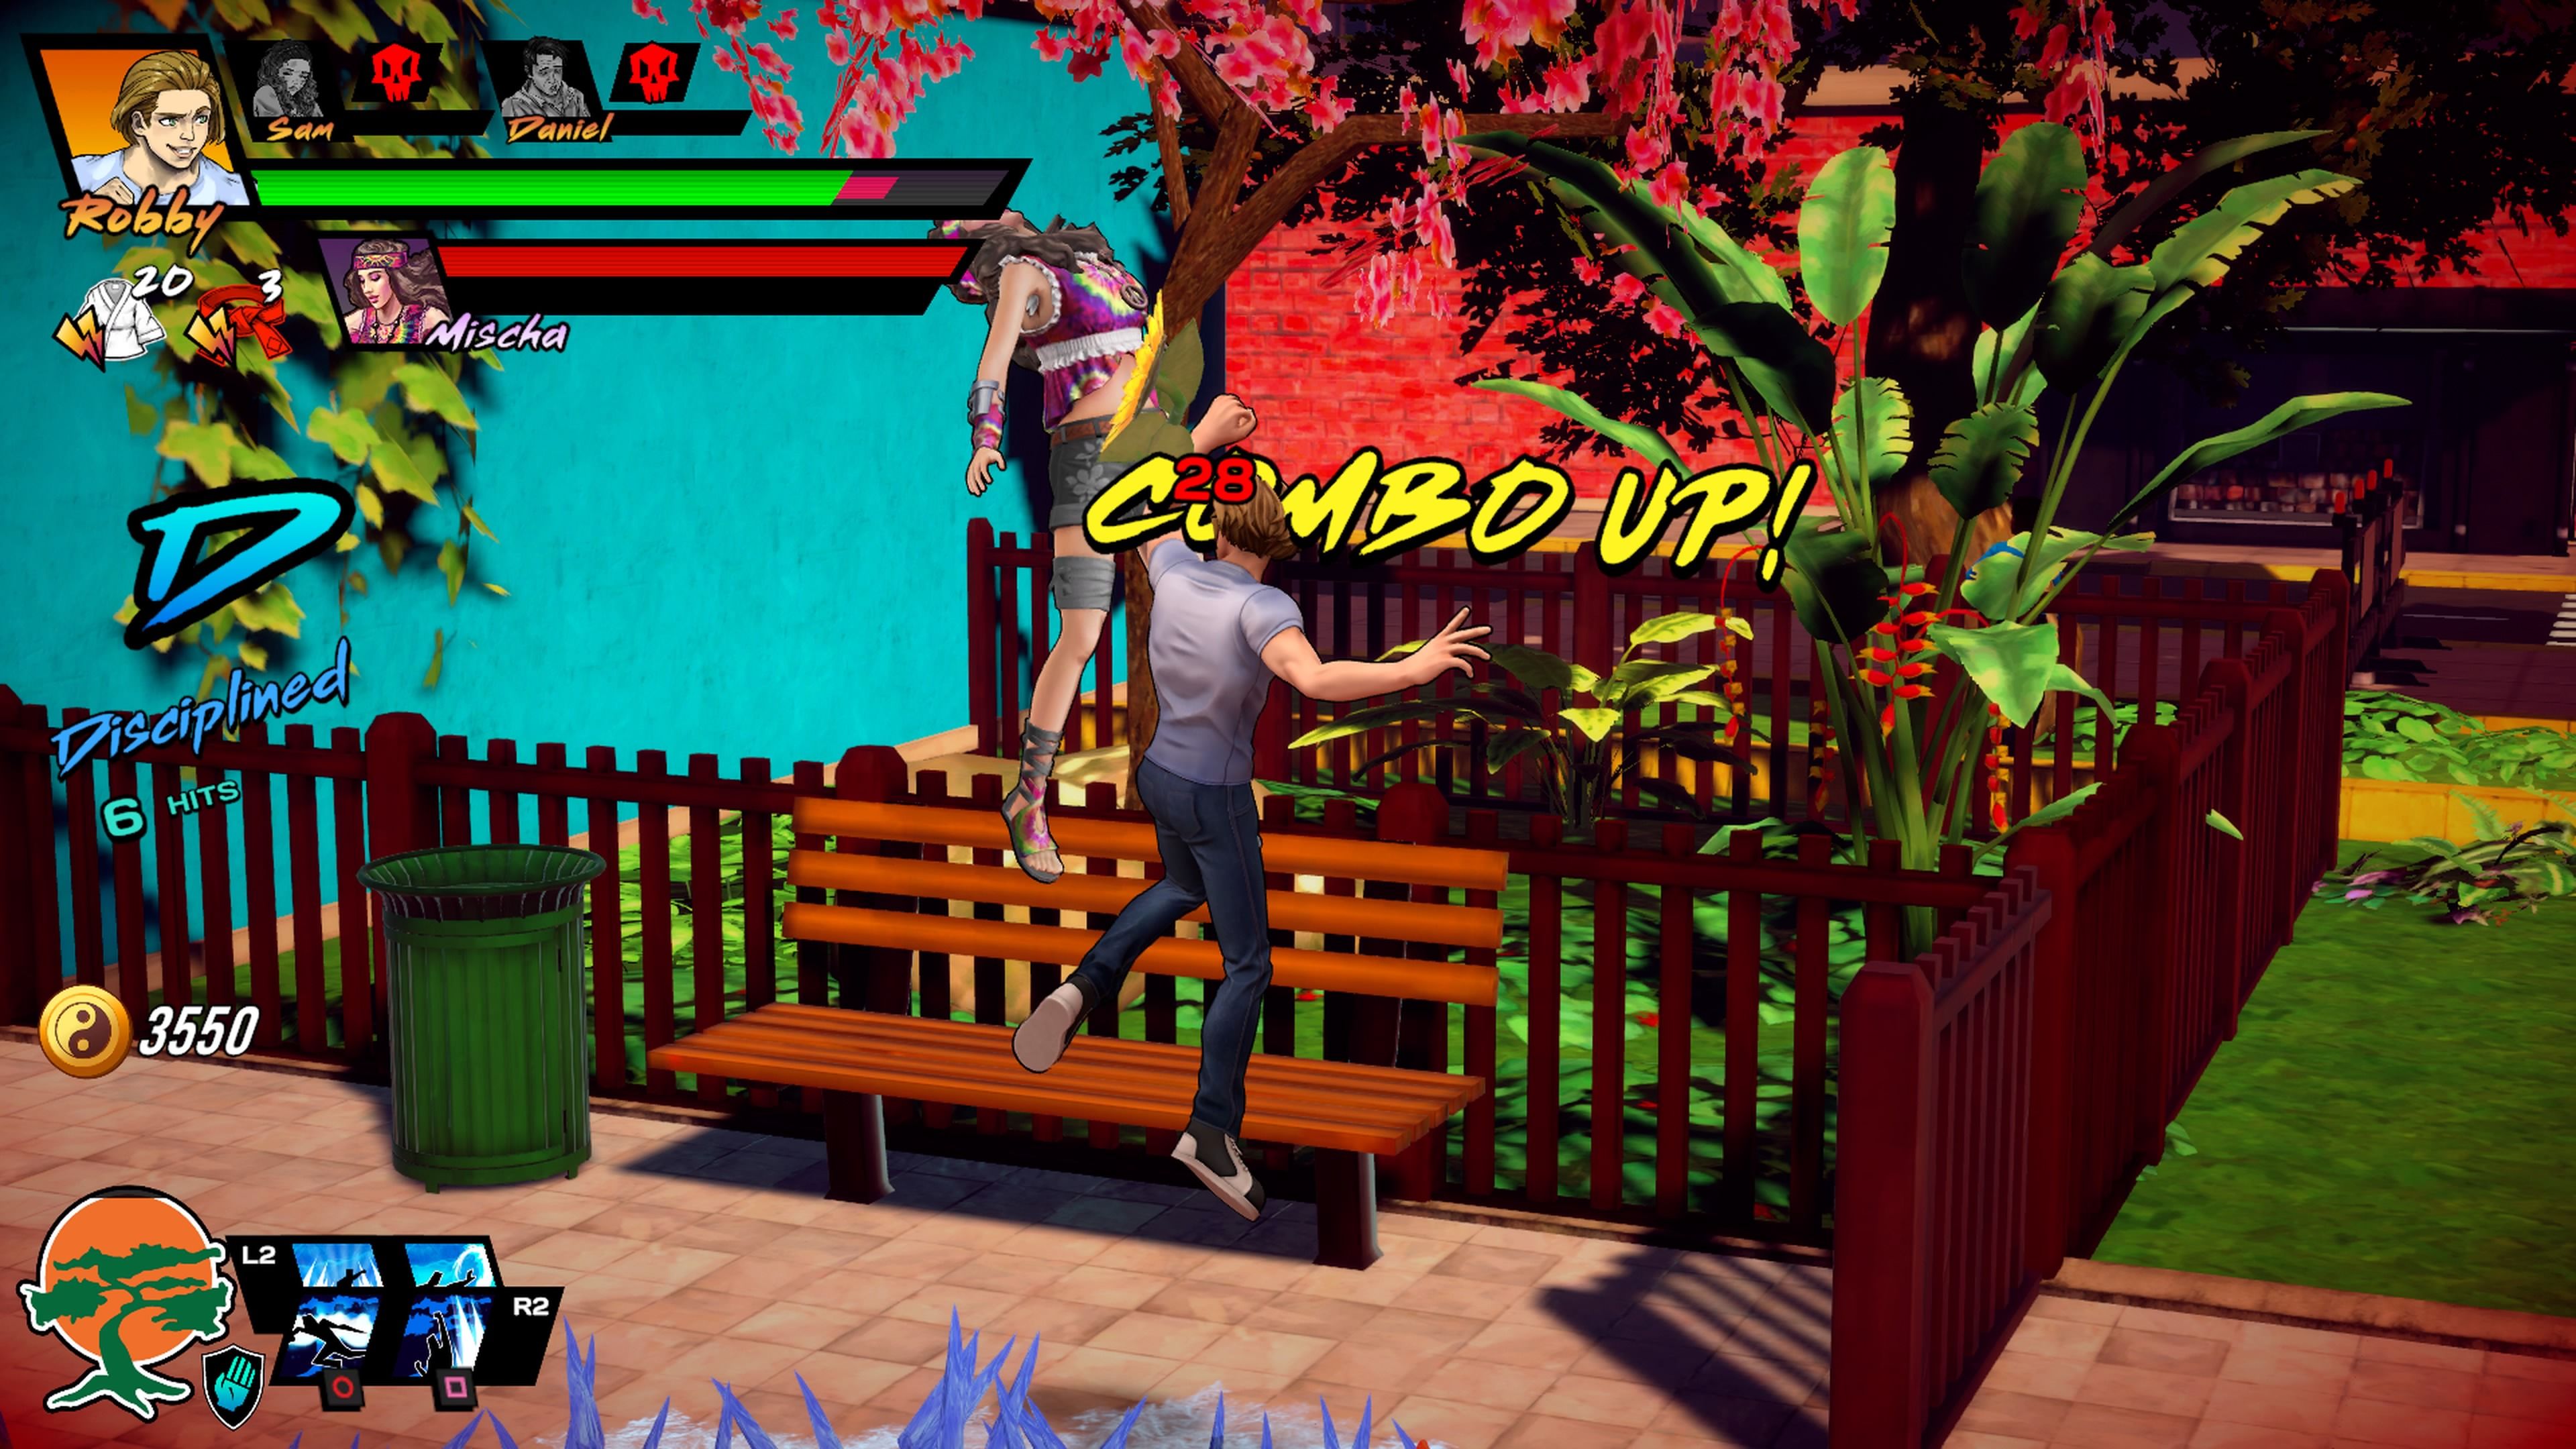 Cobra Kai: The Karate Kid Saga Continues, análisis: review con precio,  tráiler y experiencia de juego para PS4, Xbox One y Nintendo Switch